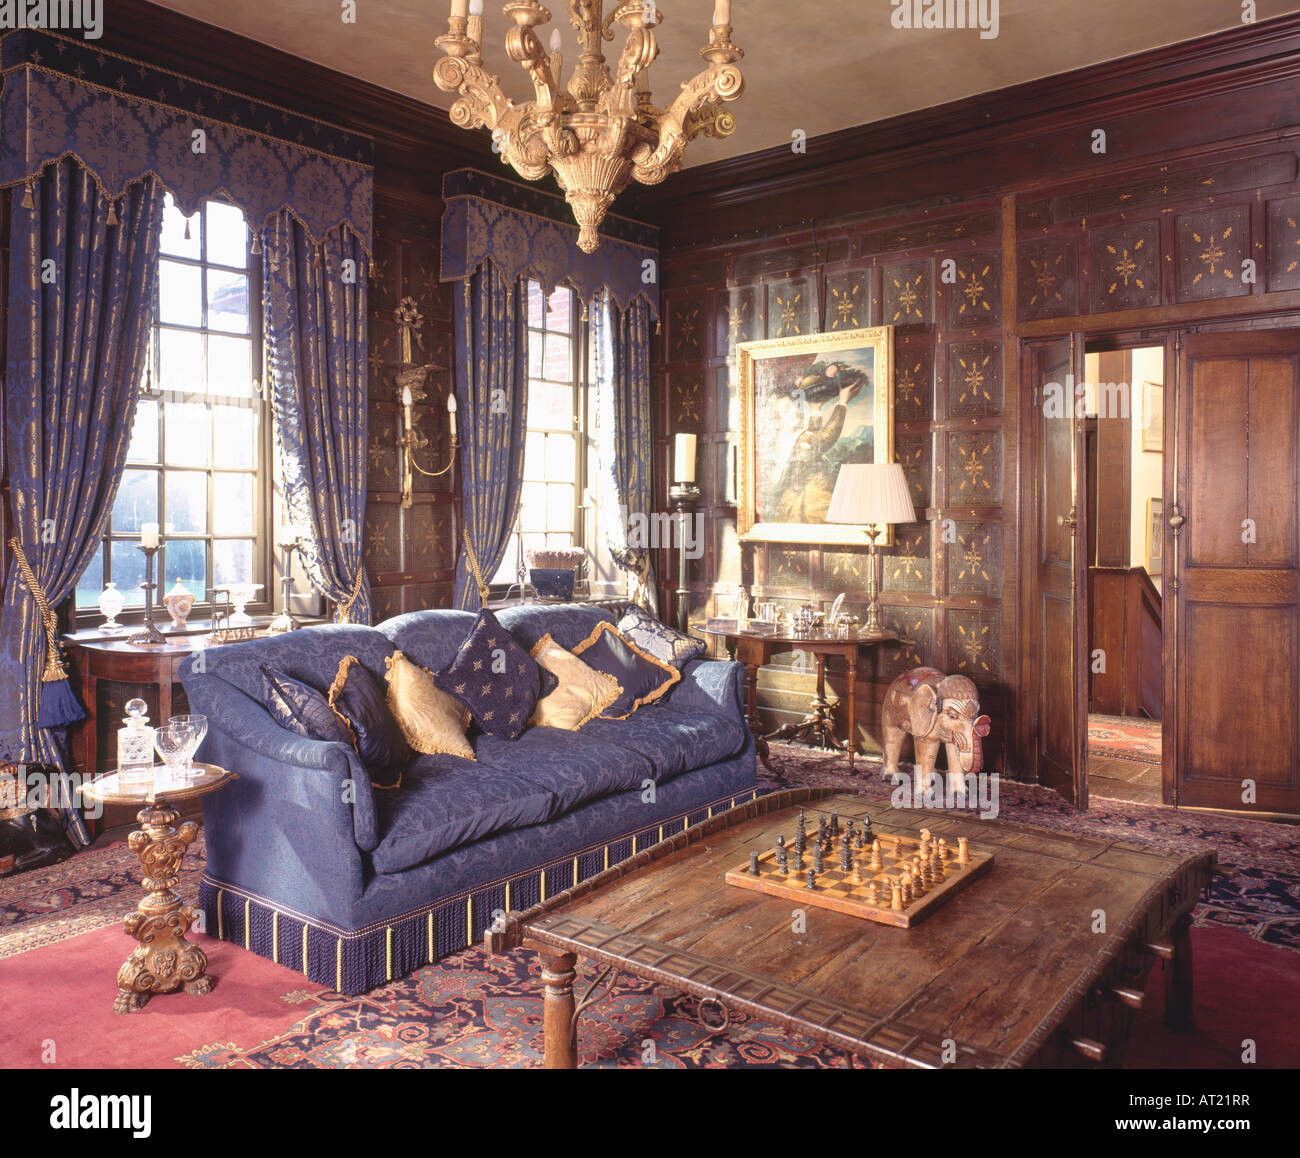 Conseil d'échecs sur la table en bois dans le salon lambrissé avec canapé bleu et bleu et or avec des rideaux cantonnières Banque D'Images